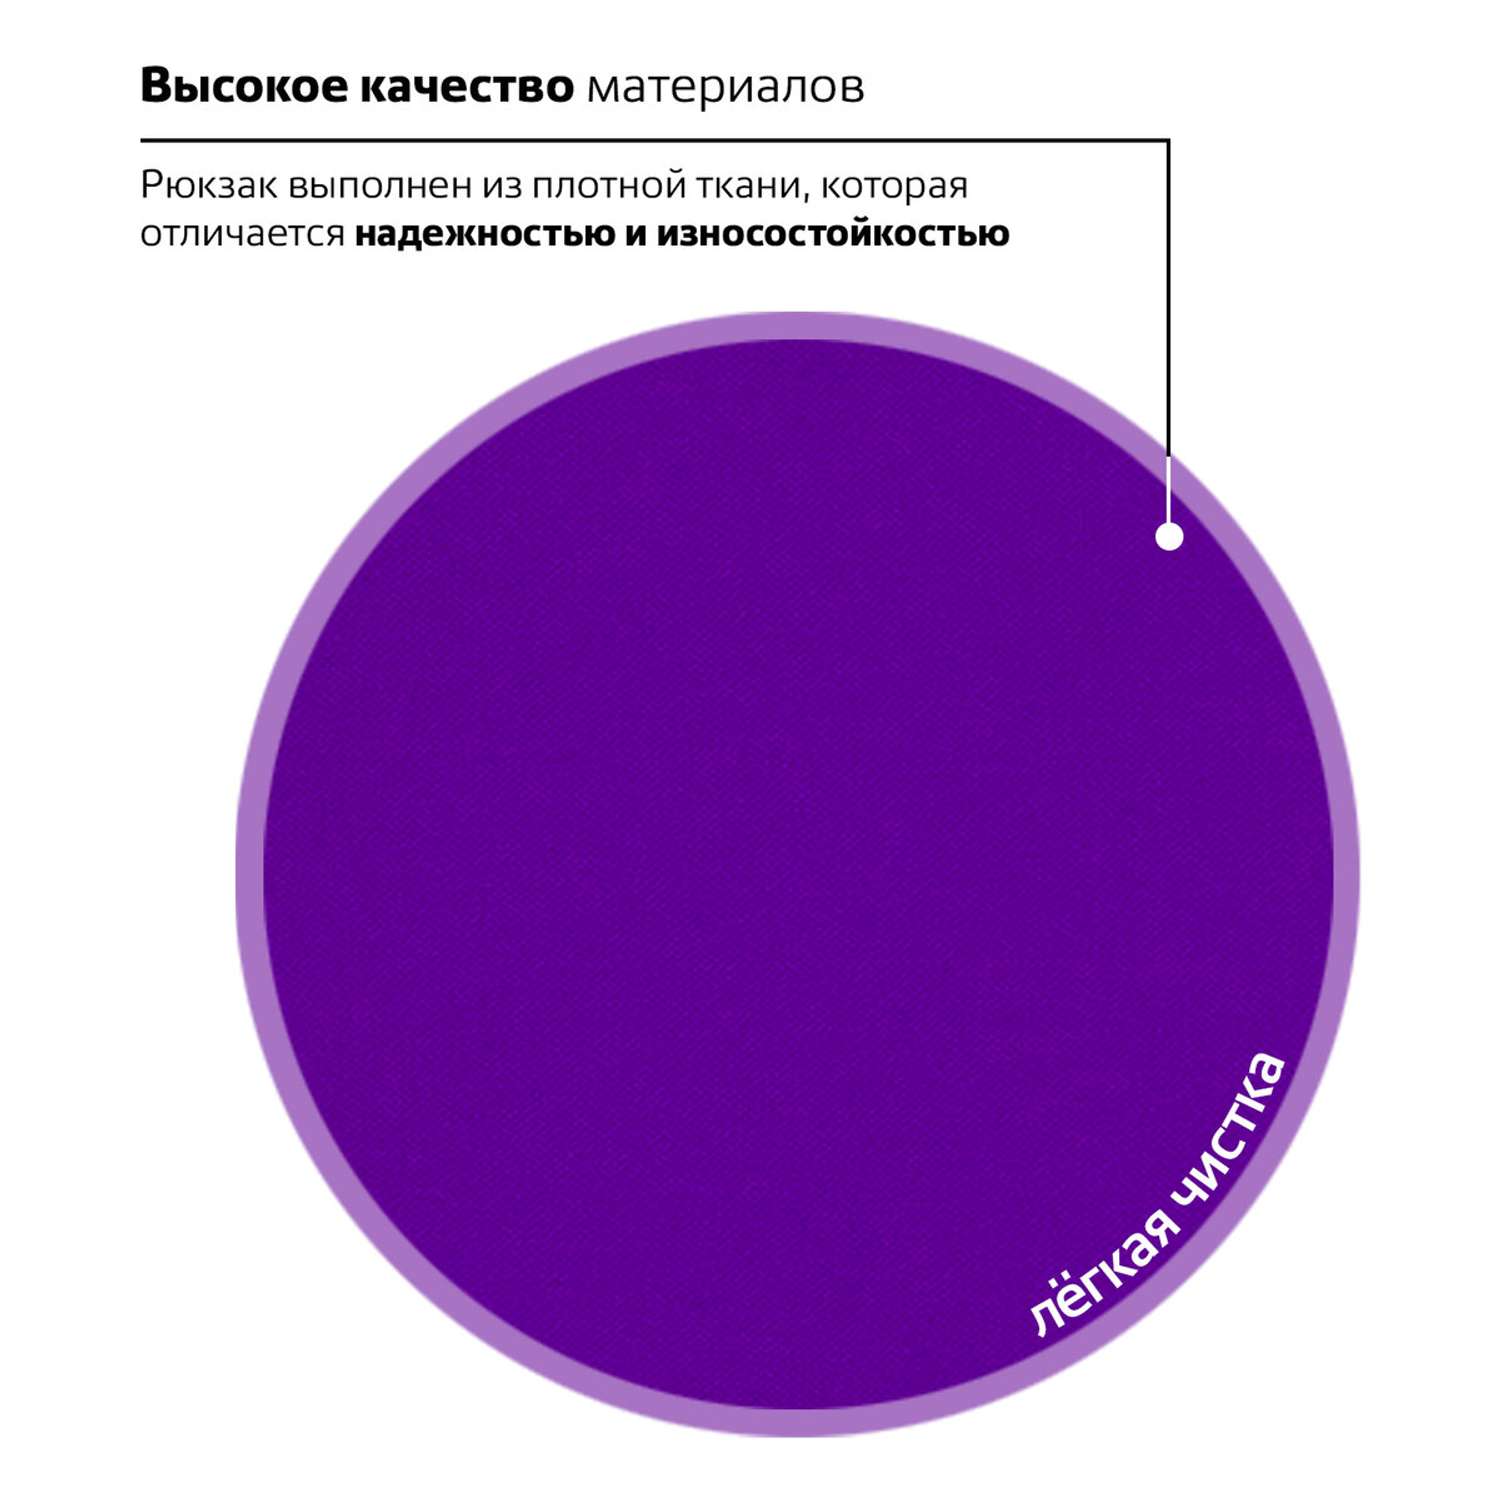 Рюкзак Brauberg Универсальный сити-формат один тон фиолетовый - фото 6